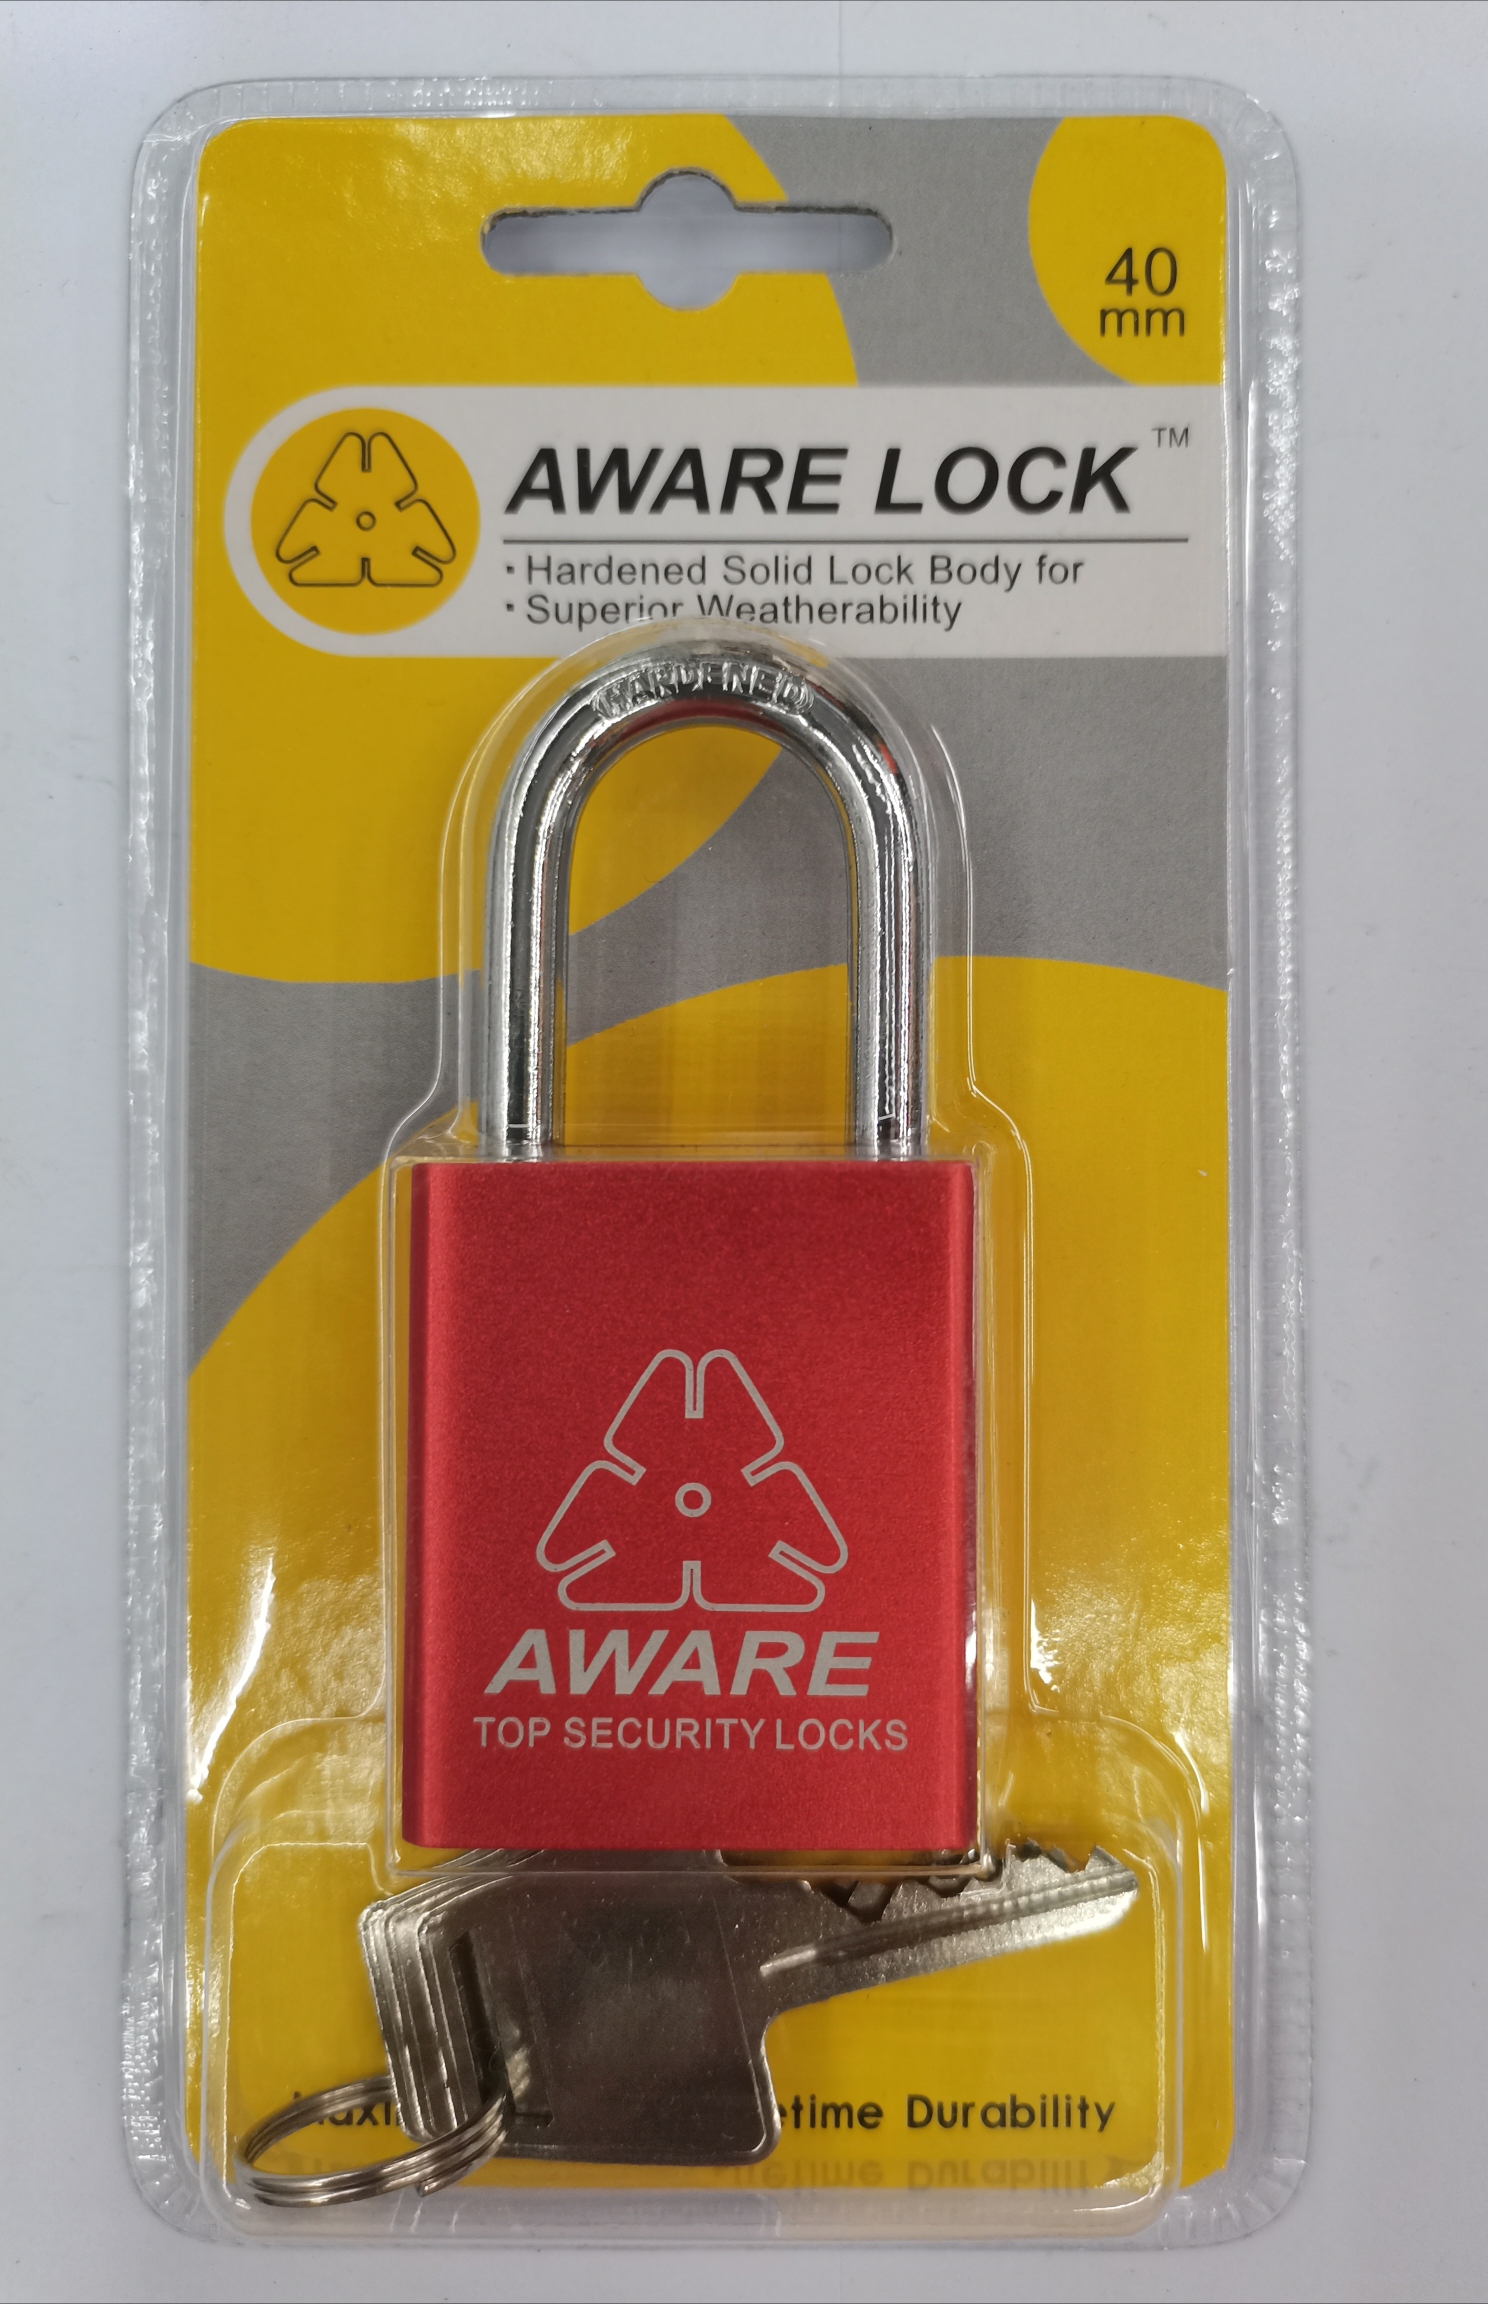 Color aware aluminum lock